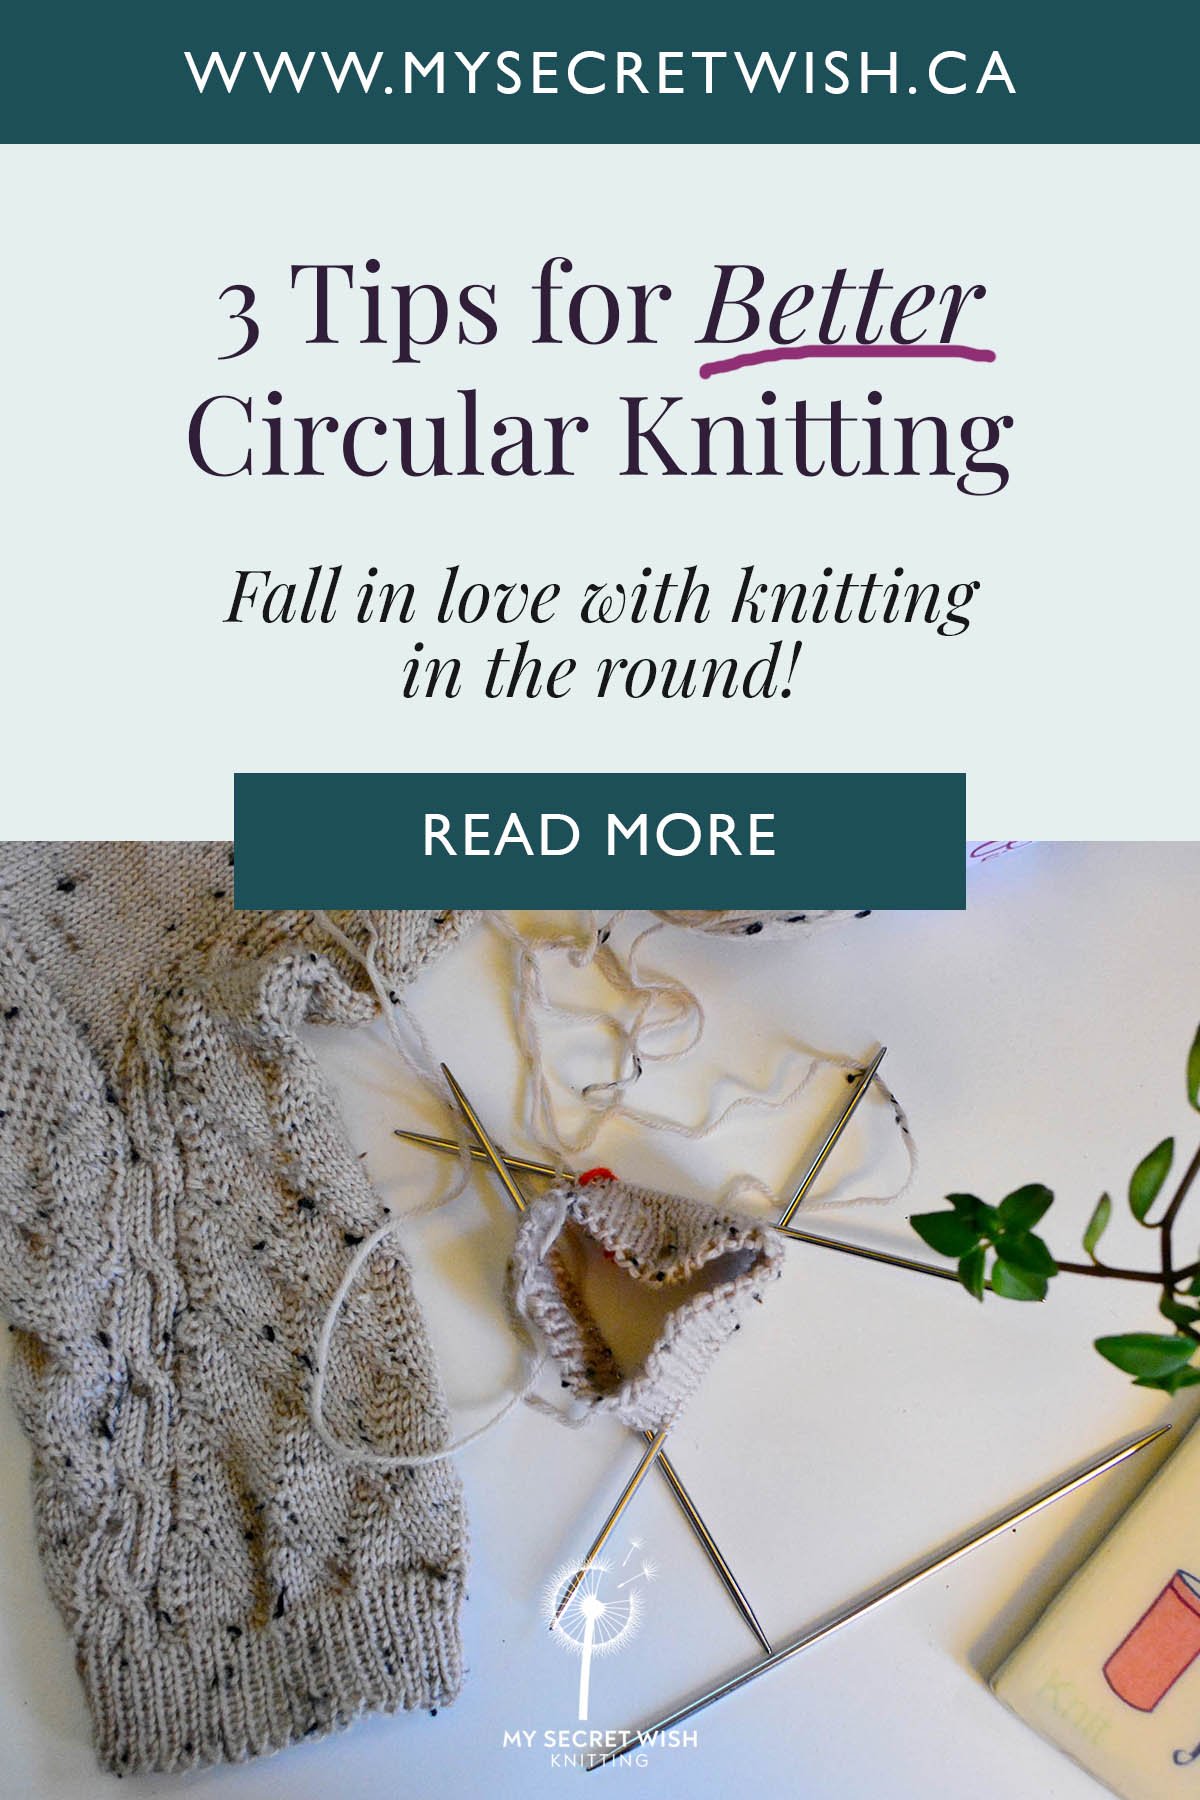 3 Tips for Better Circular Knitting